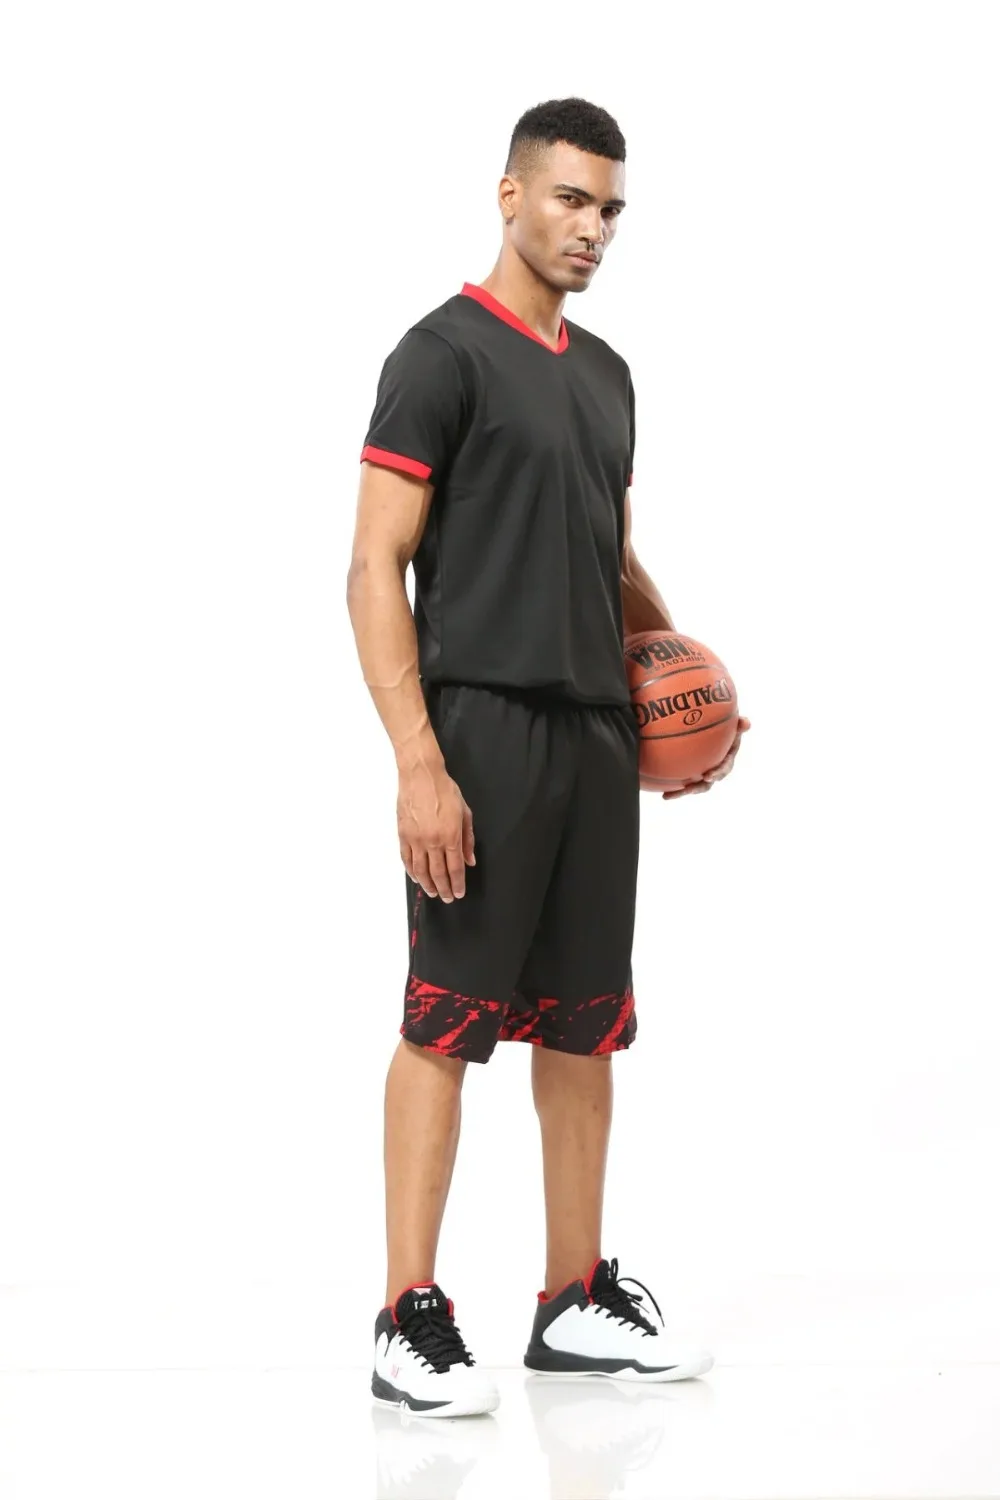 Дешевая мужская баскетбольная майка дышащая Студенческая спортивная баскетбольная футболка с коротким рукавом футболки для тренировок